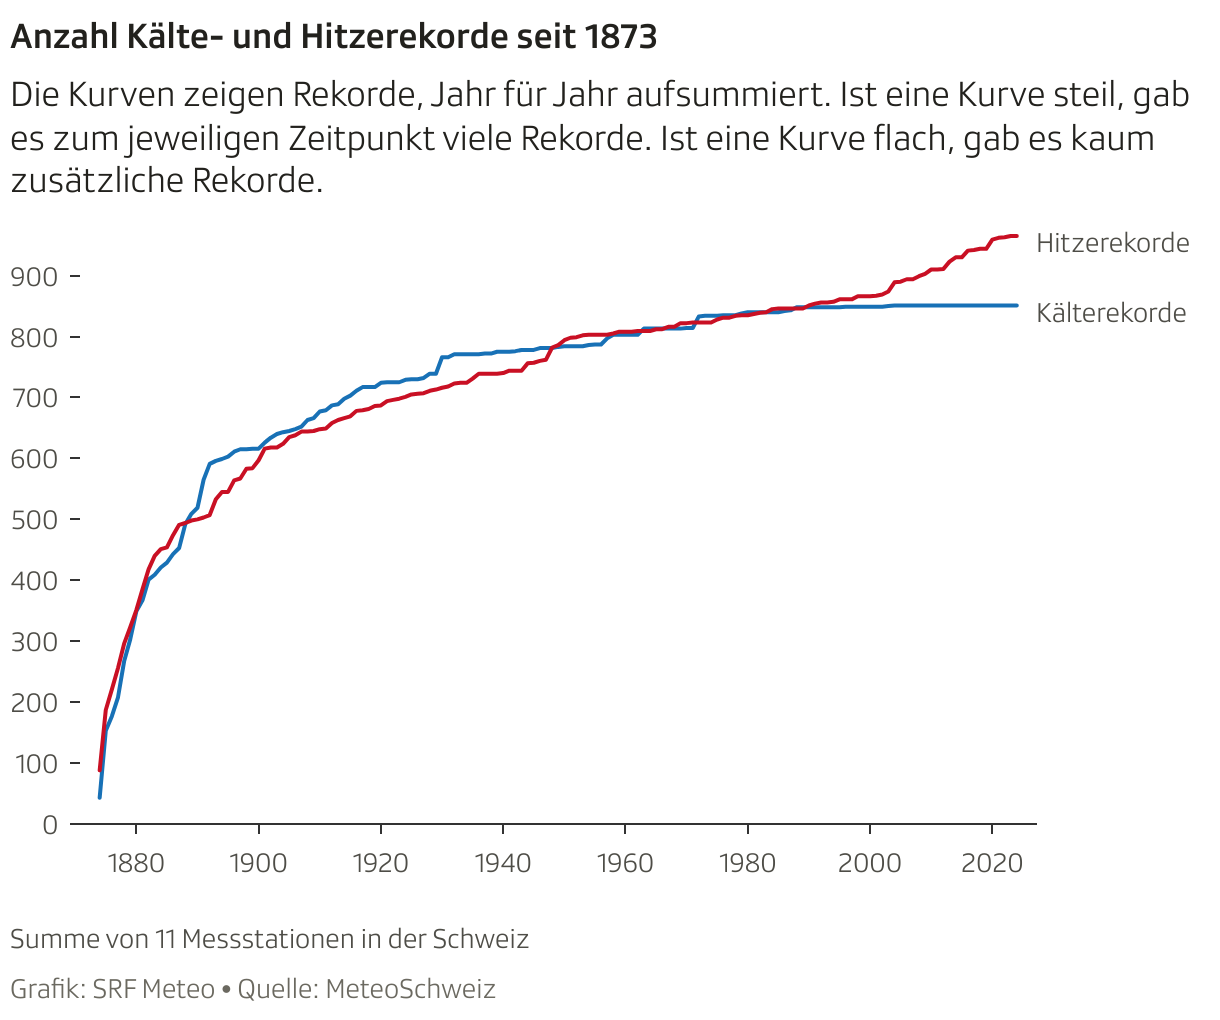 Bis Anfang der neunziger Jahre gab es in der Schweiz ähnlich viele Hitze- und Kälterekorde. Seither fast nur noch Hitzerekorde.